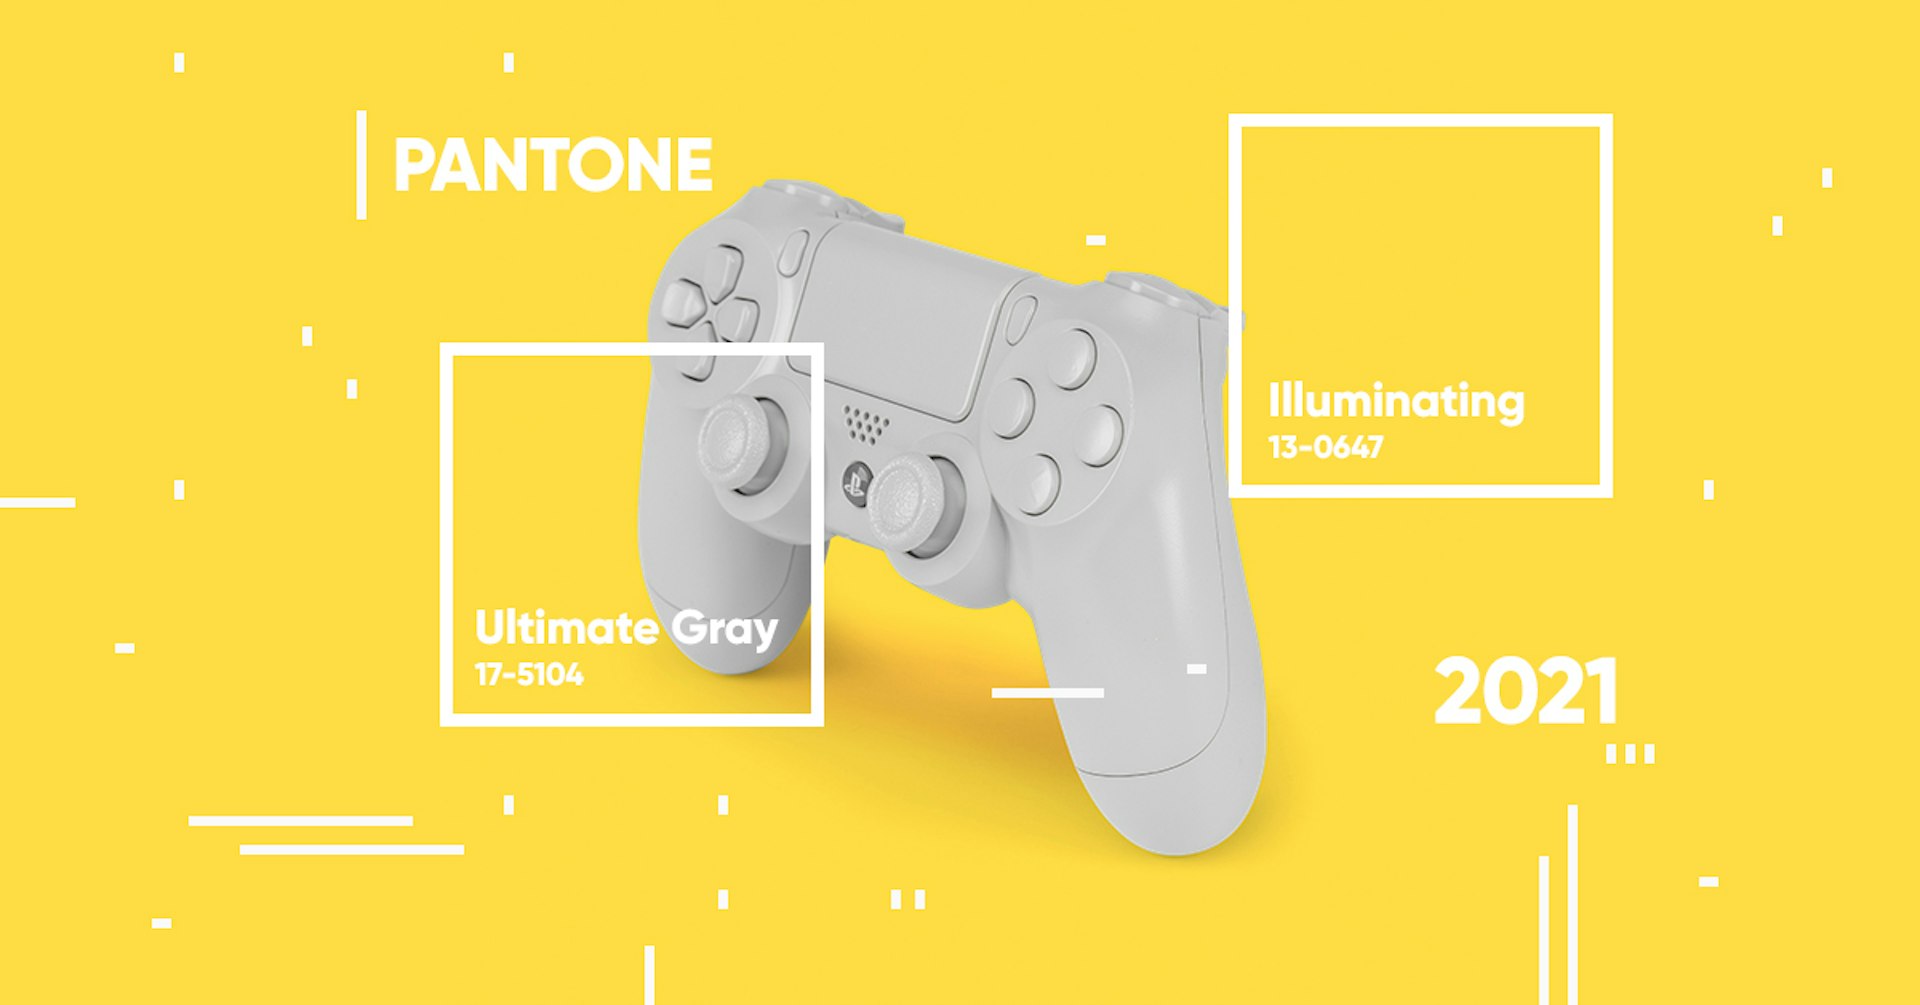 Revelação do Pantone color 2021: ultimate gray + illuminating